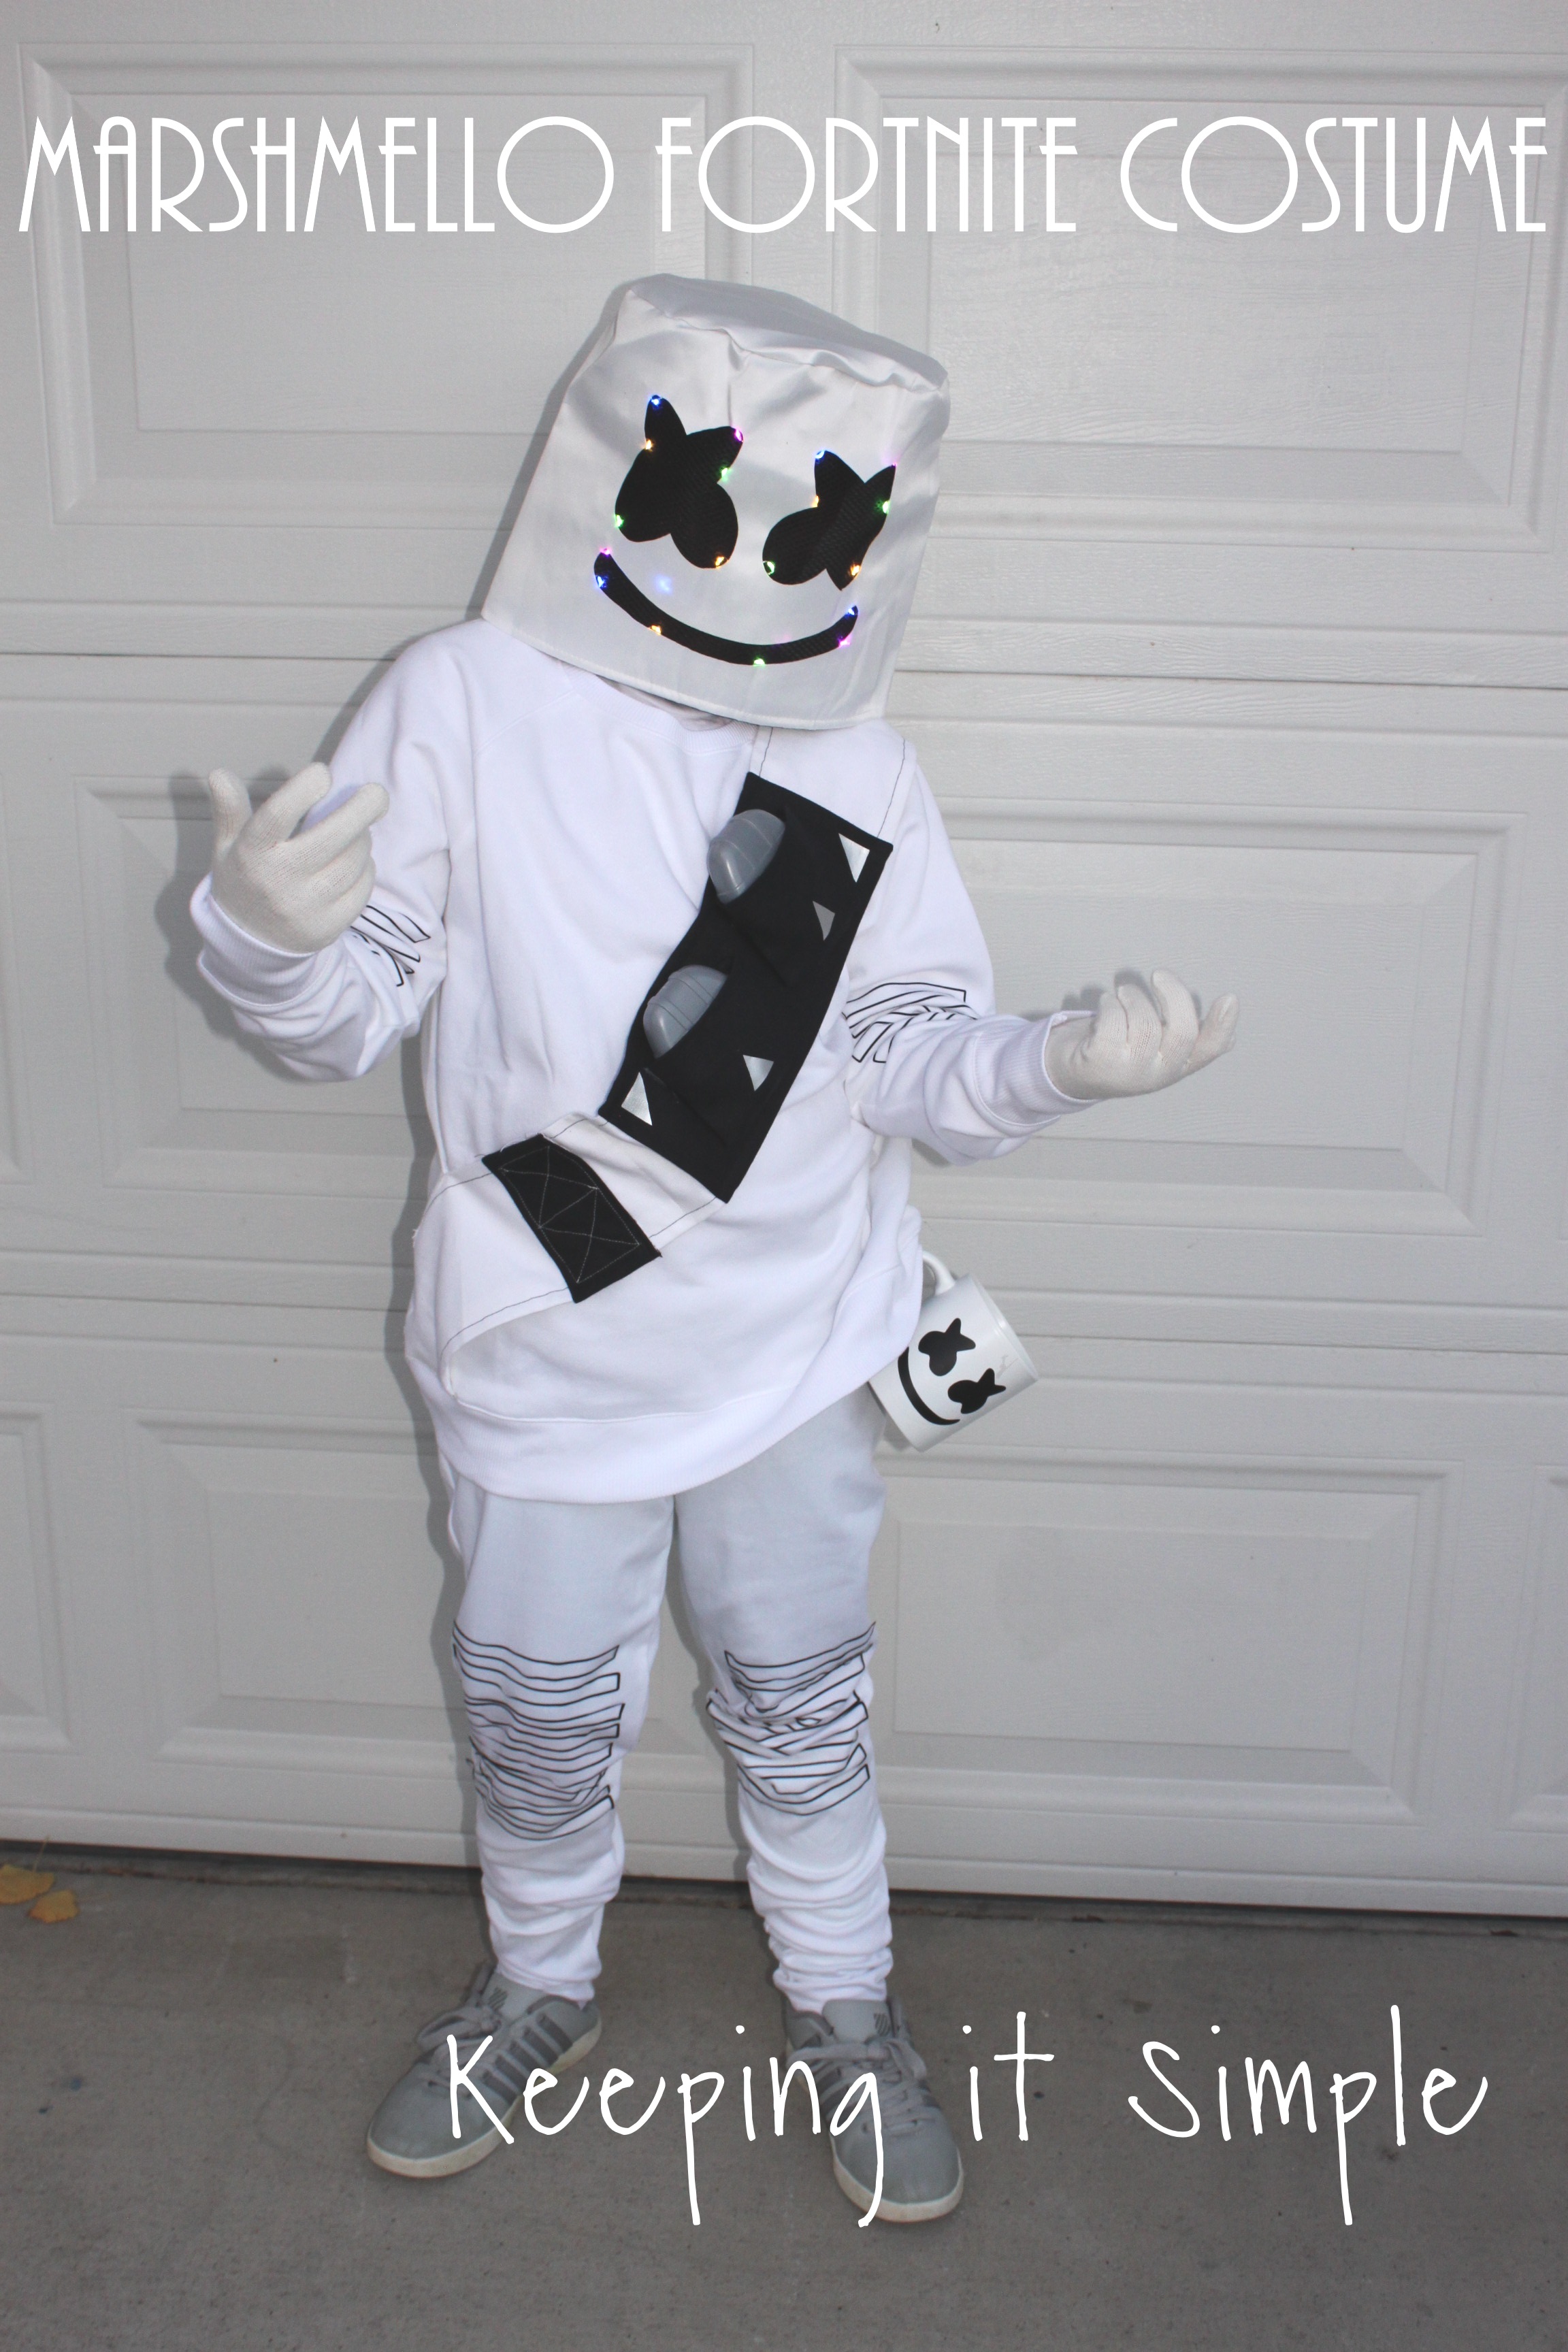 hval ål Idol Last Minute DIY Marshmello Fortnite Costume - Keeping it Simple